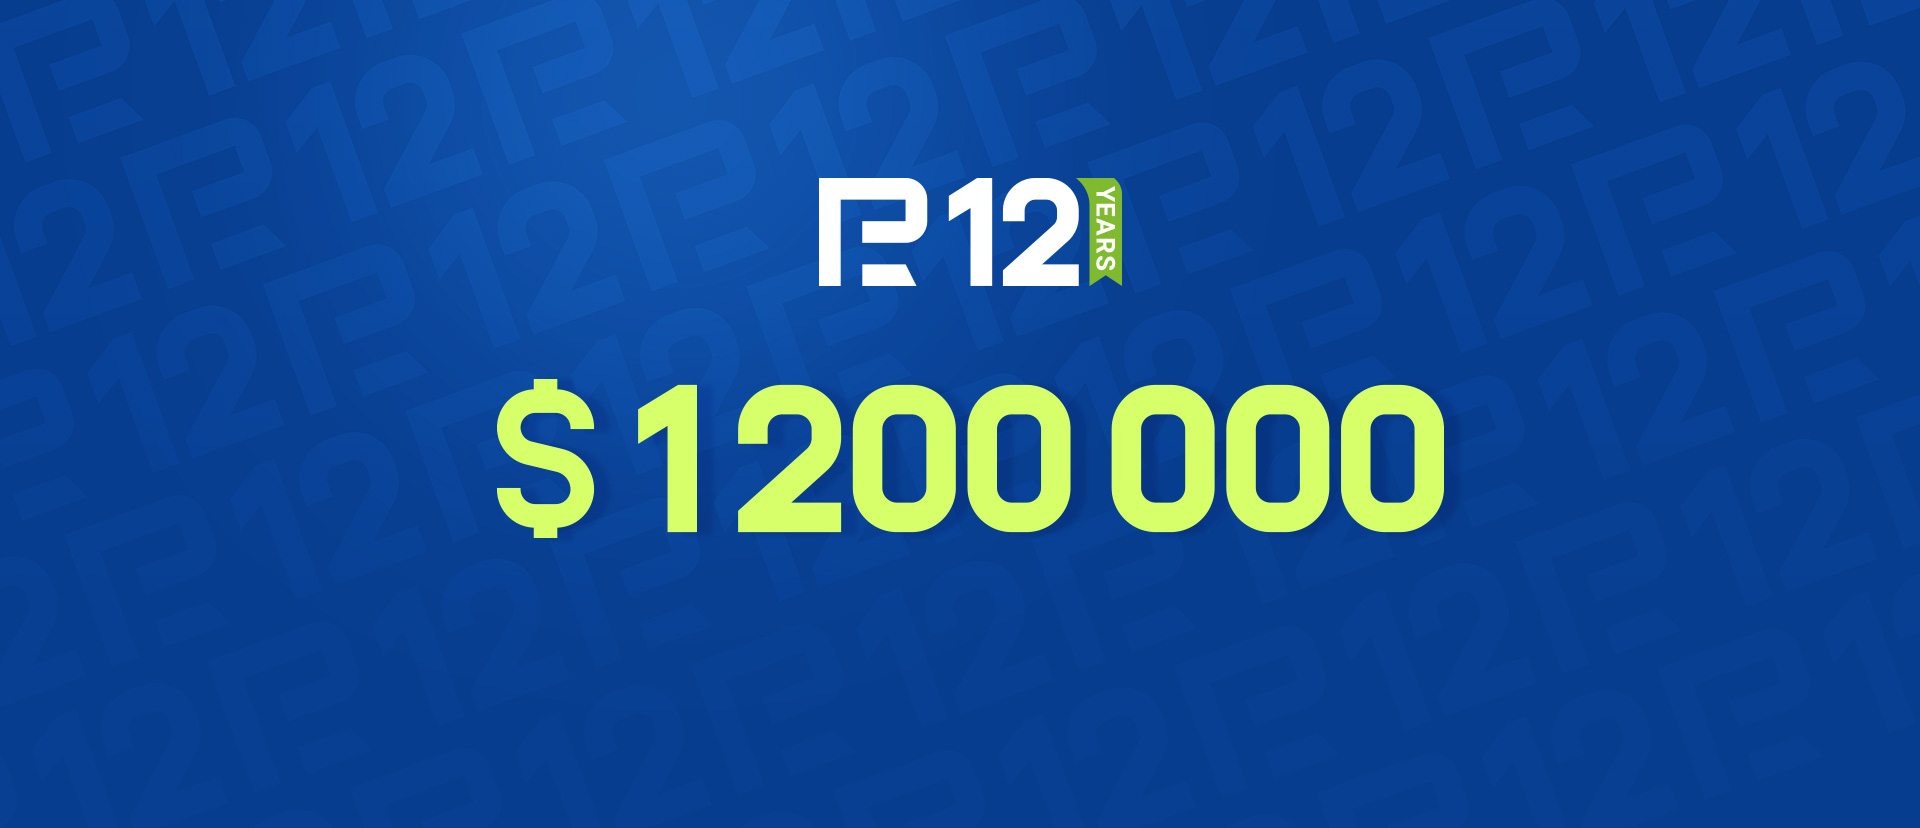 โปรโมชั่นพร้อมเงินรางวัลรวม $1,200,000 โดย RoboForex เข้าร่วมและชนะ!